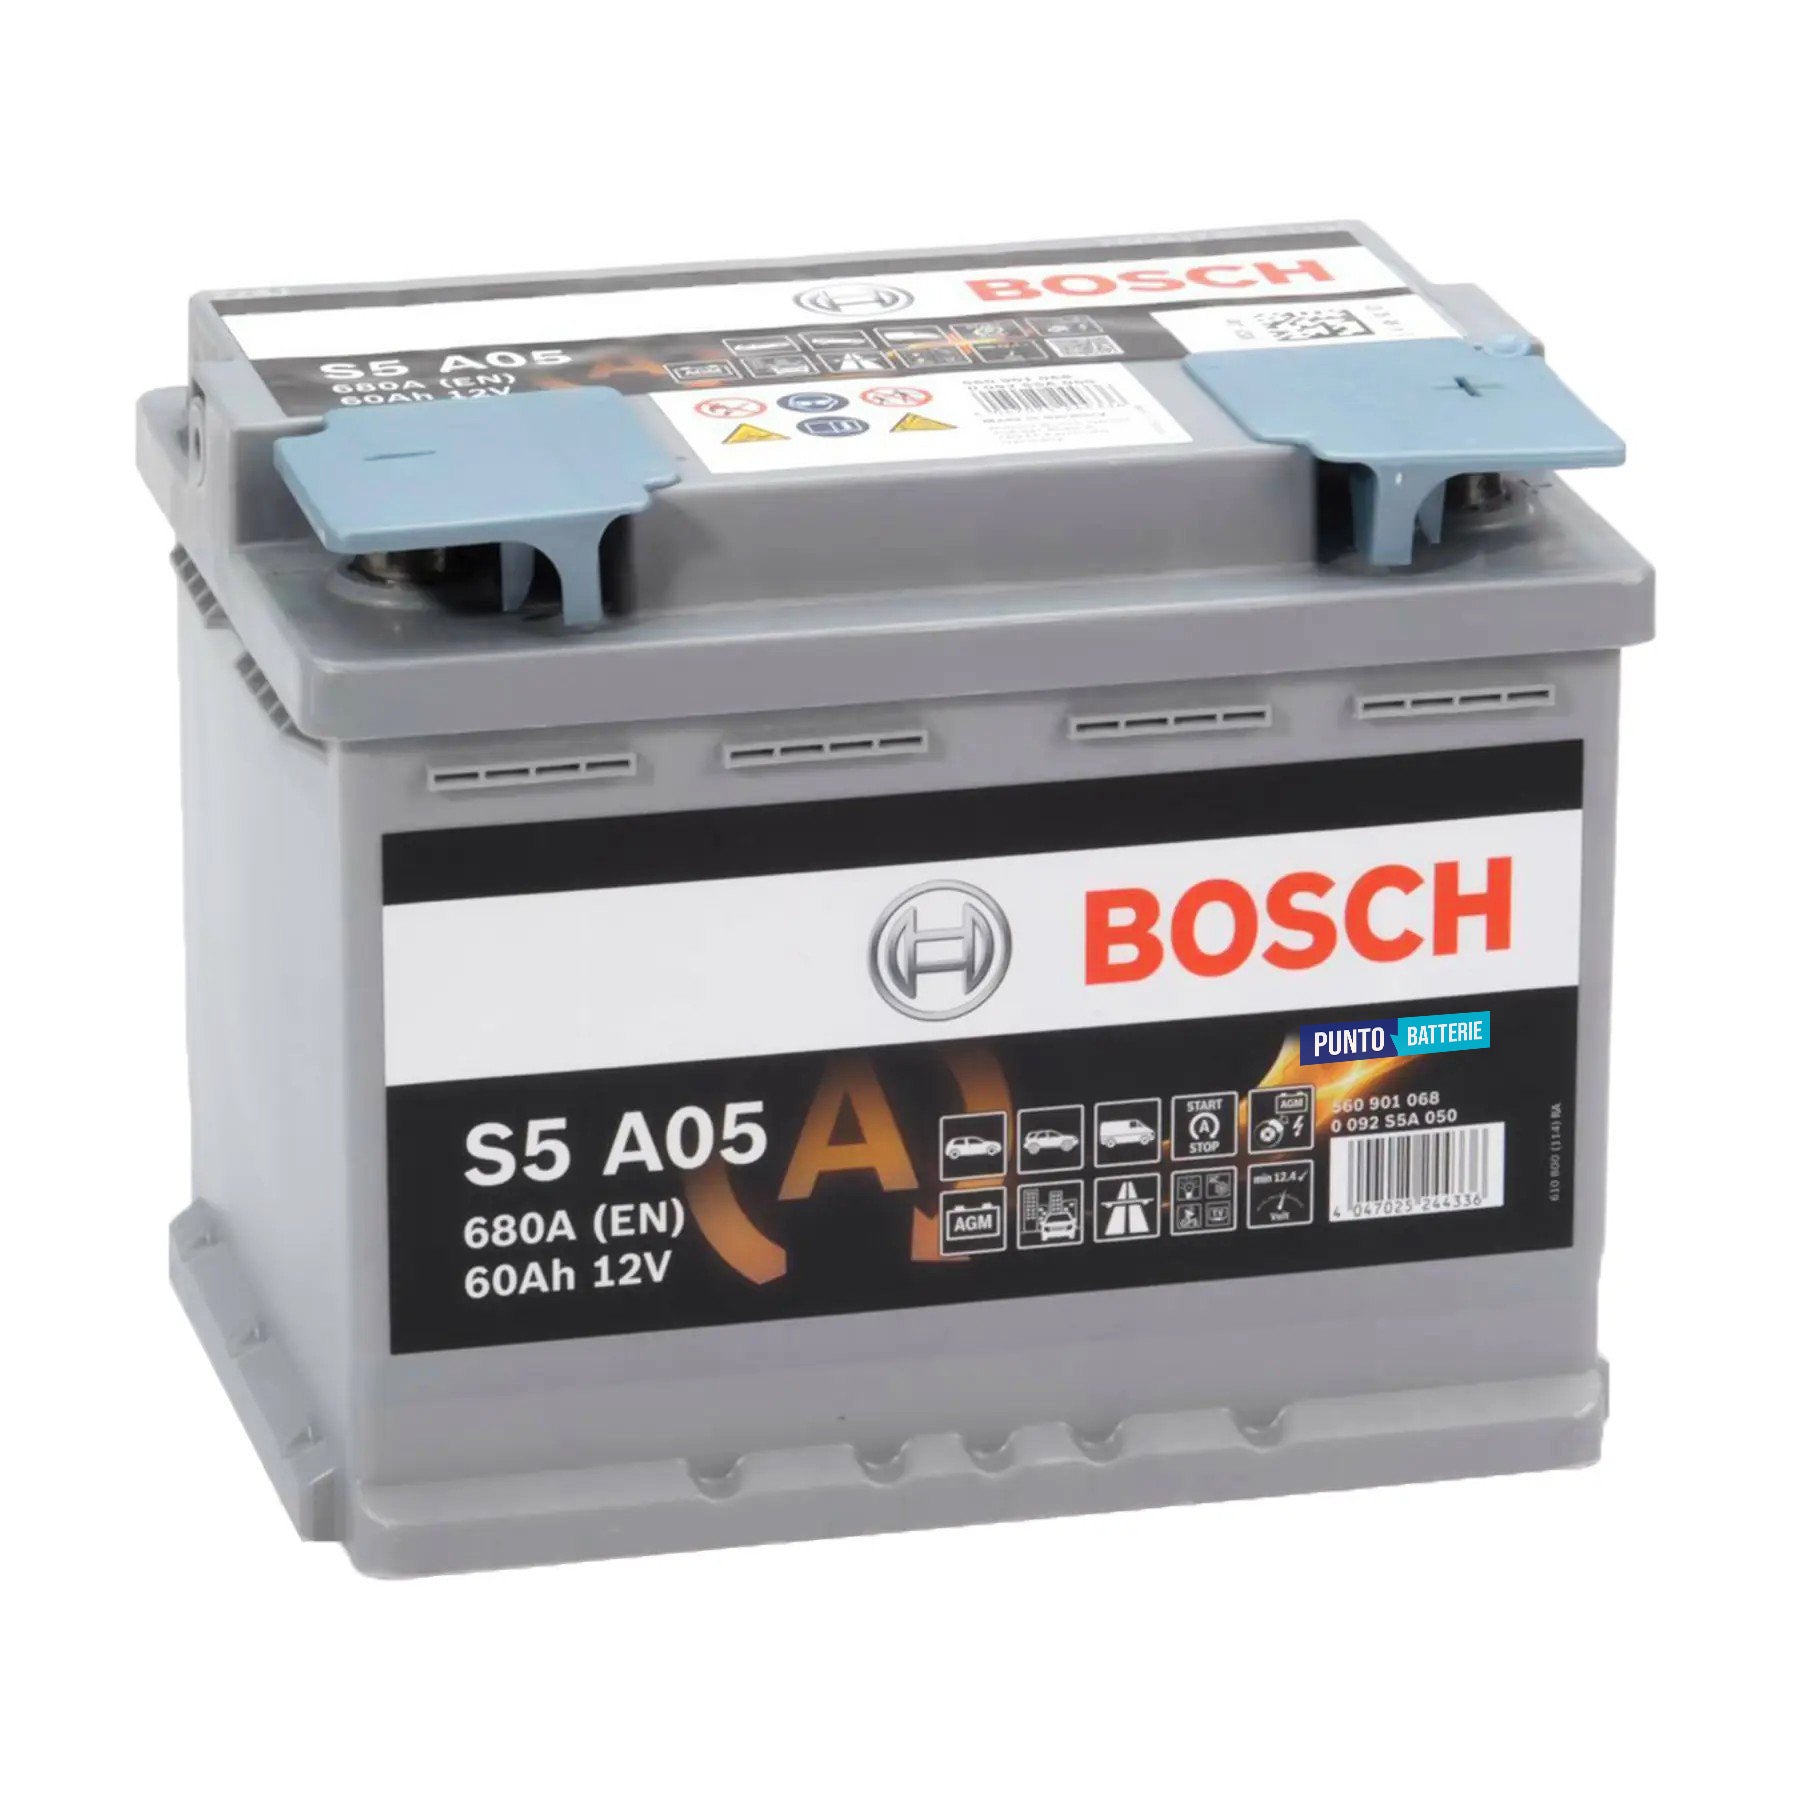 Batteria originale Bosch S5A S5 A05, dimensioni 242 x 175 x 190, polo positivo a destra, 12 volt, 60 amperora, 680 ampere, AGM. Batteria per auto e veicoli leggeri con start e stop.